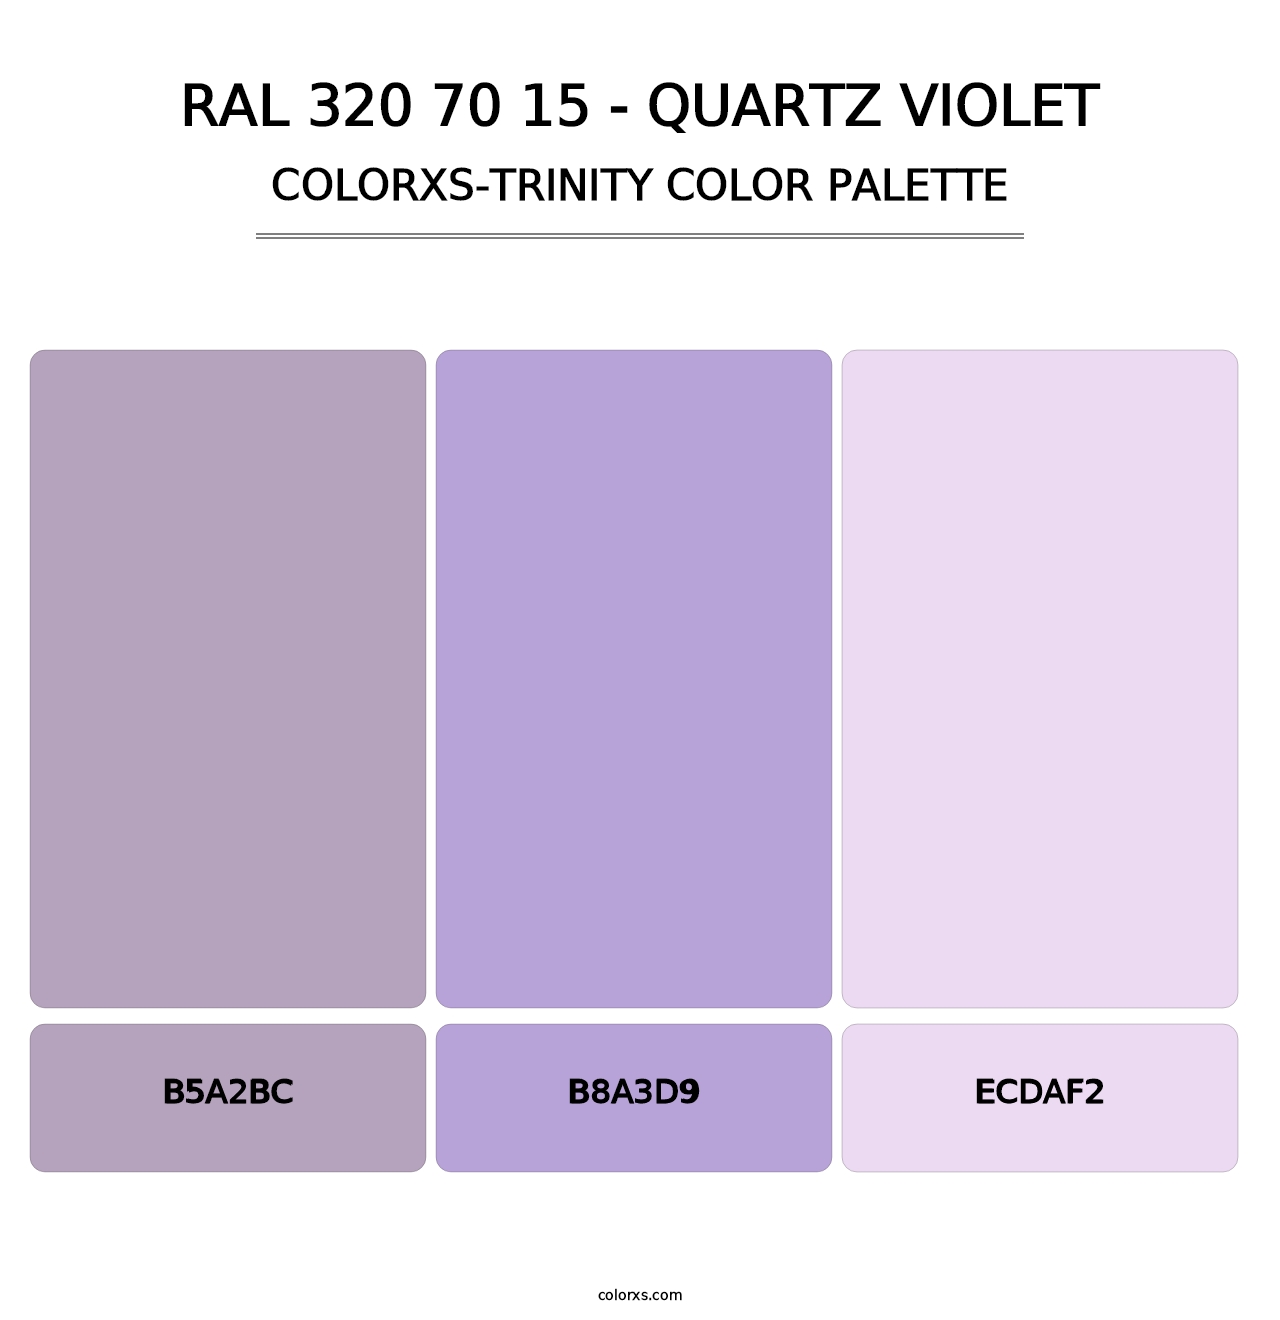 RAL 320 70 15 - Quartz Violet - Colorxs Trinity Palette